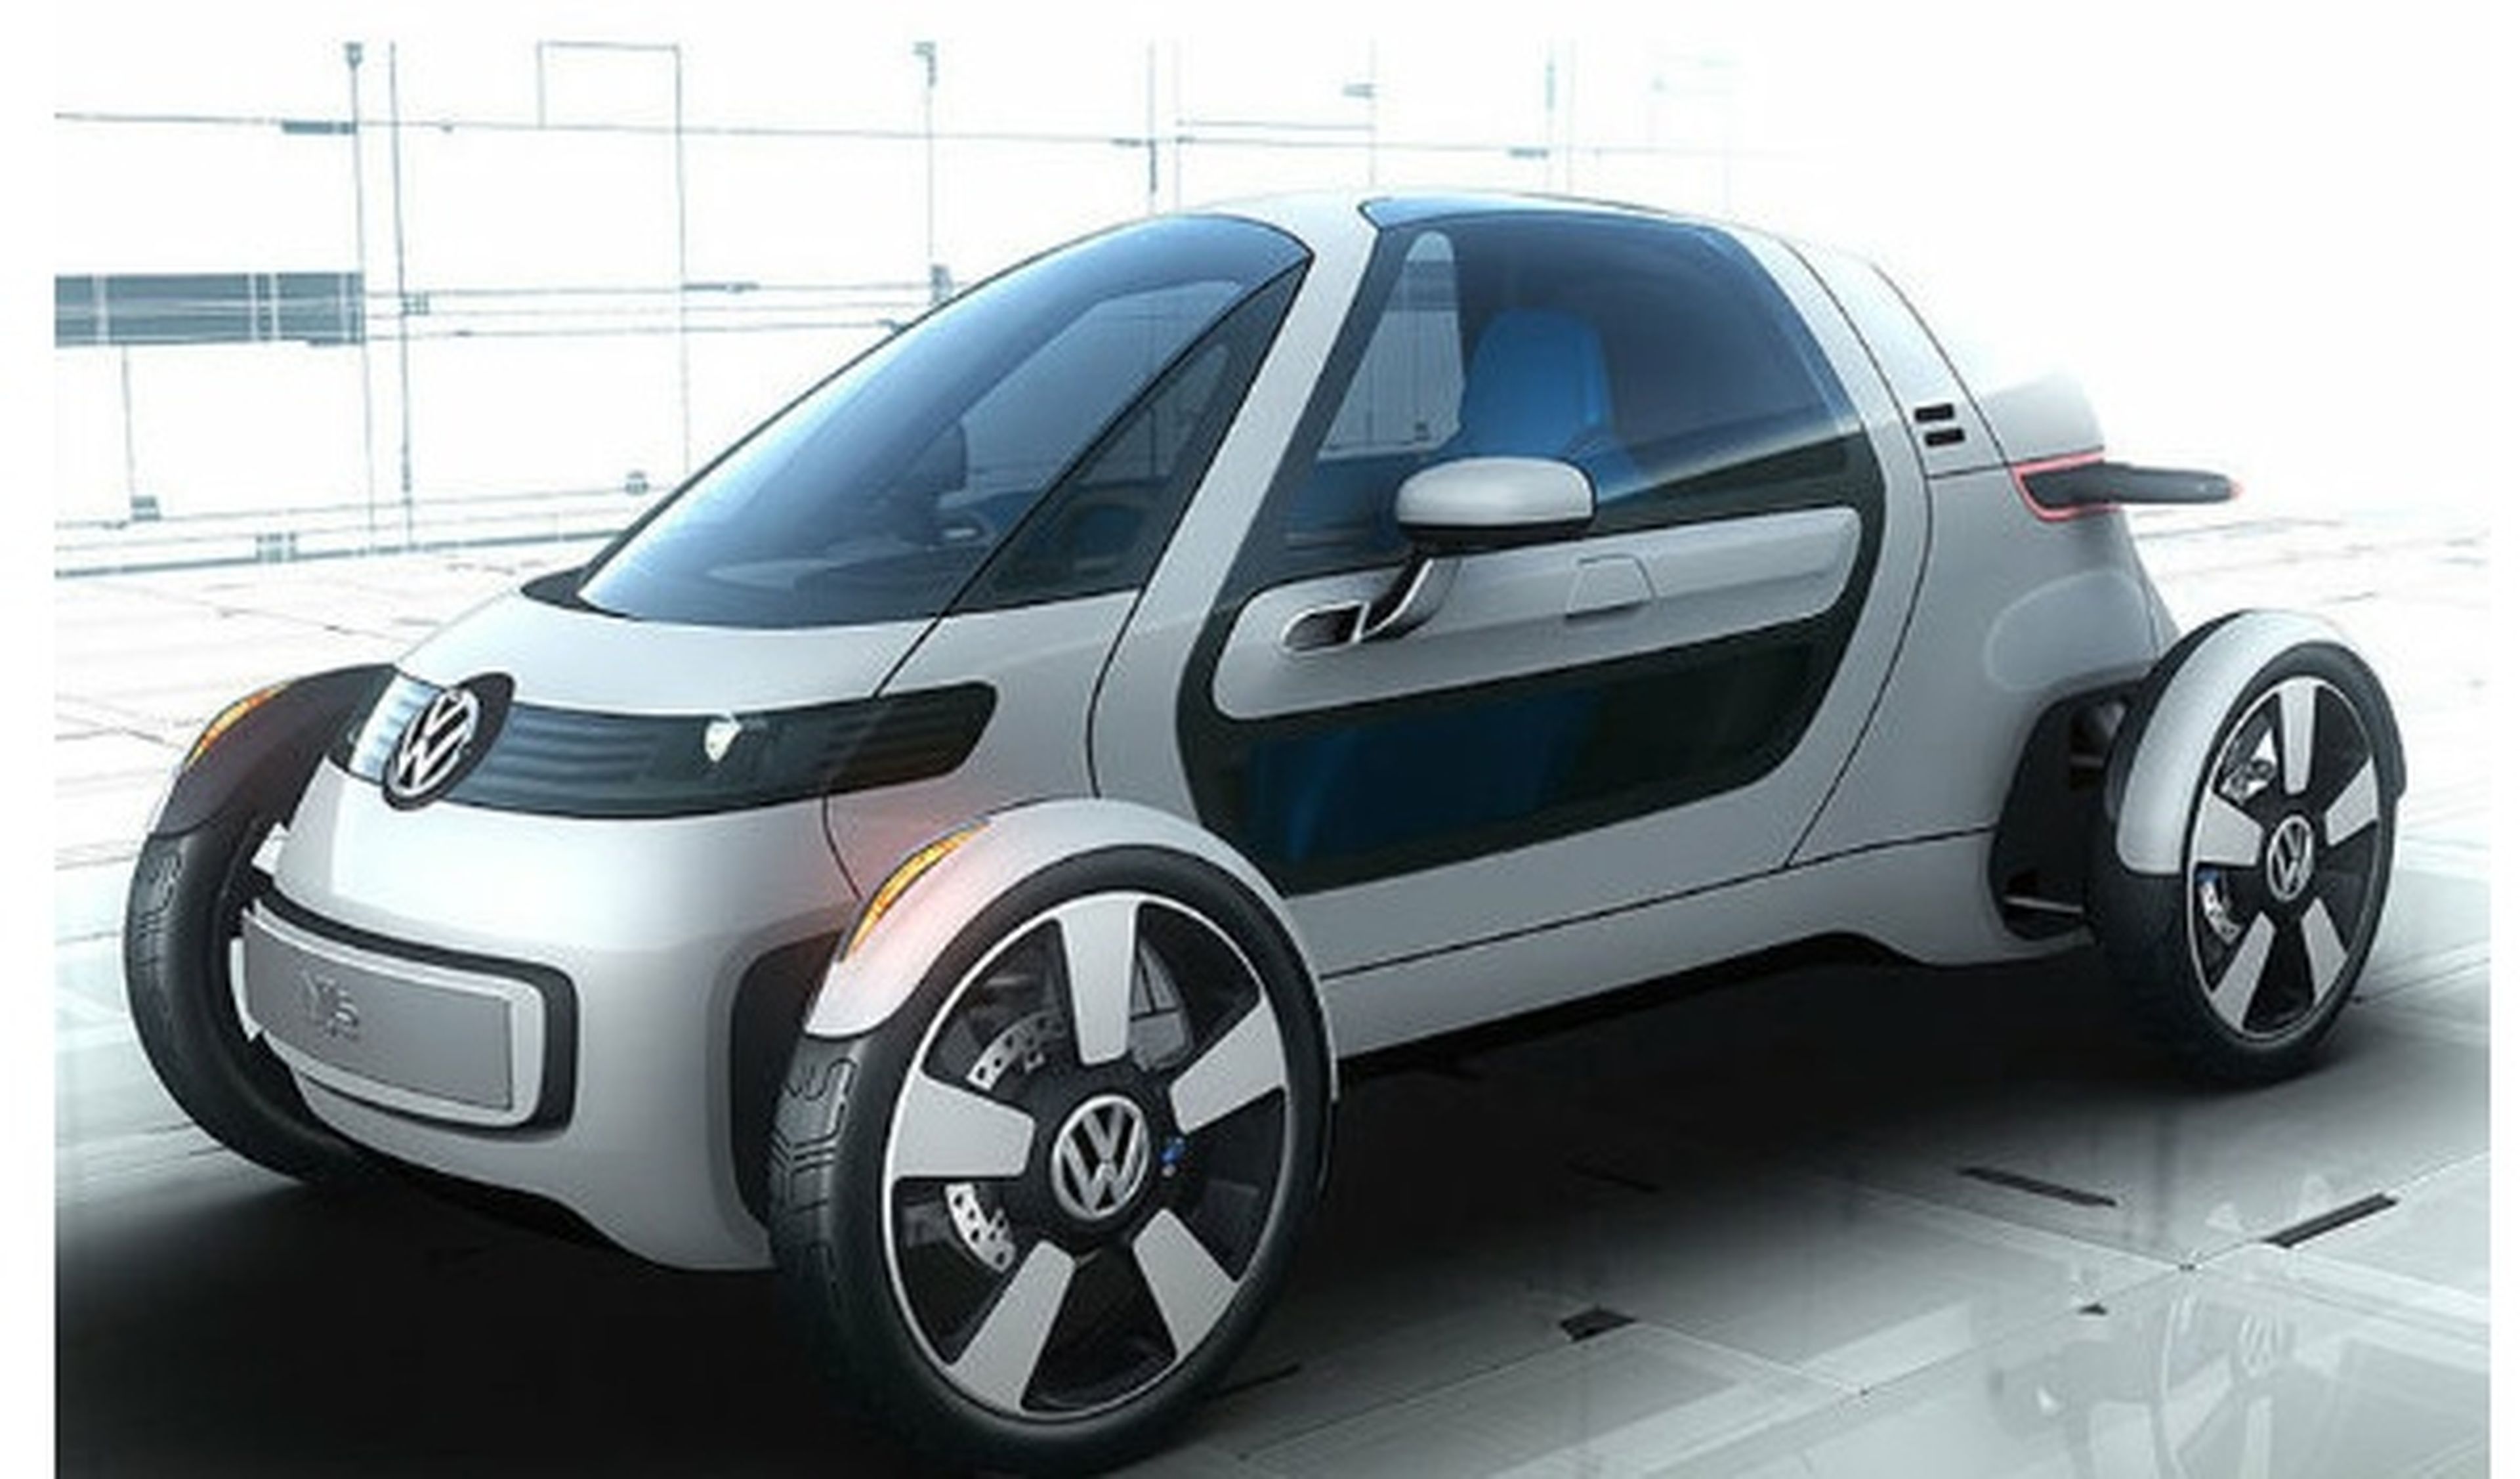 Volkswagen Nils se presentará en el Salón de Frankfurt 2011